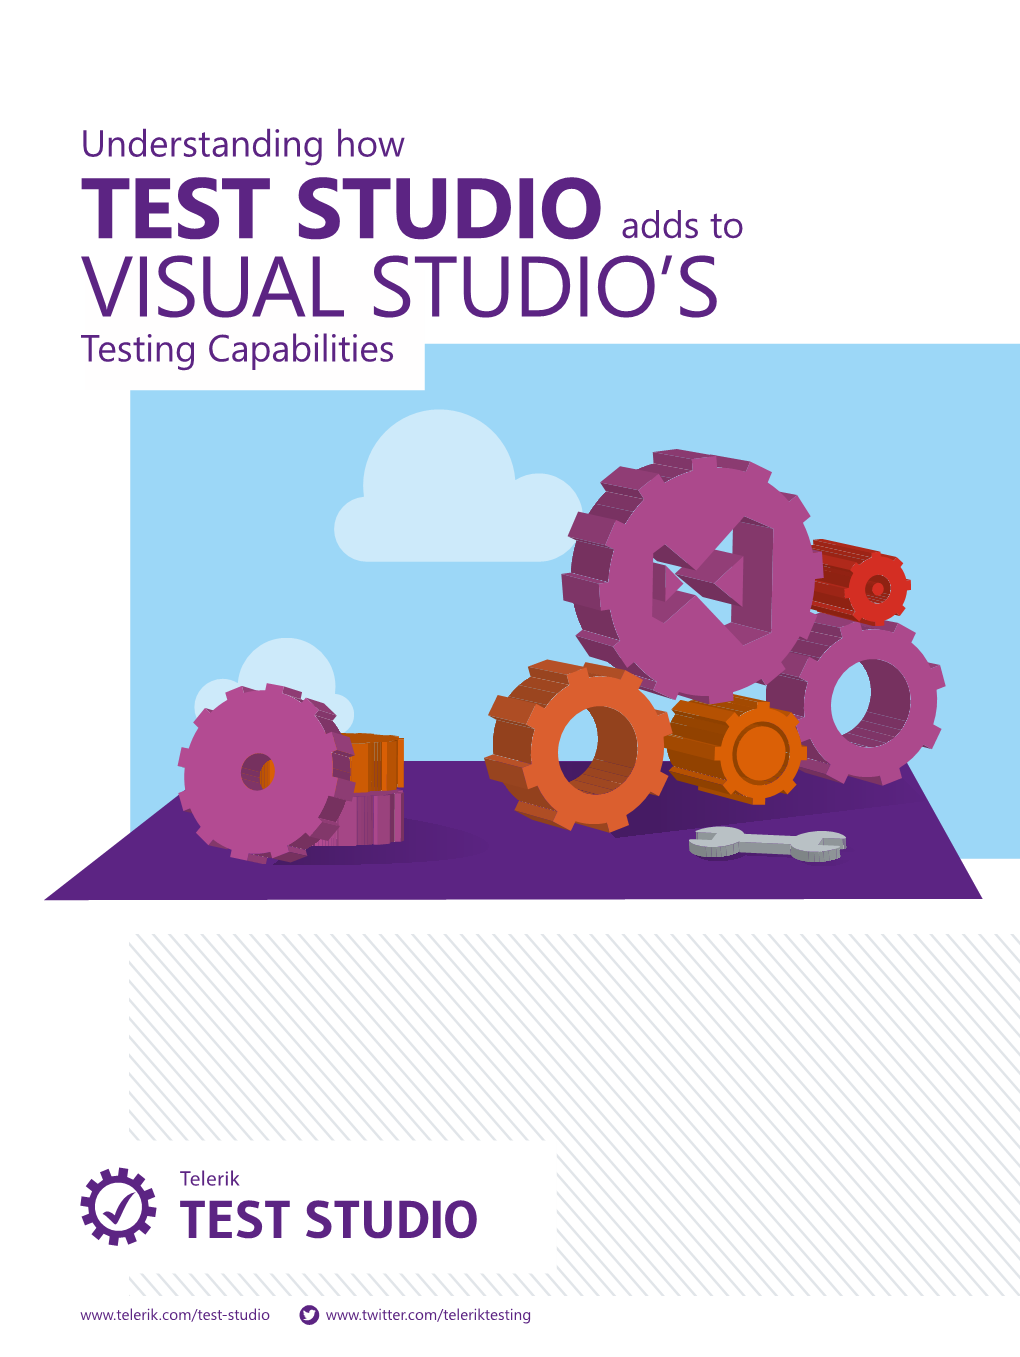 TEST STUDIO Visual Studio's